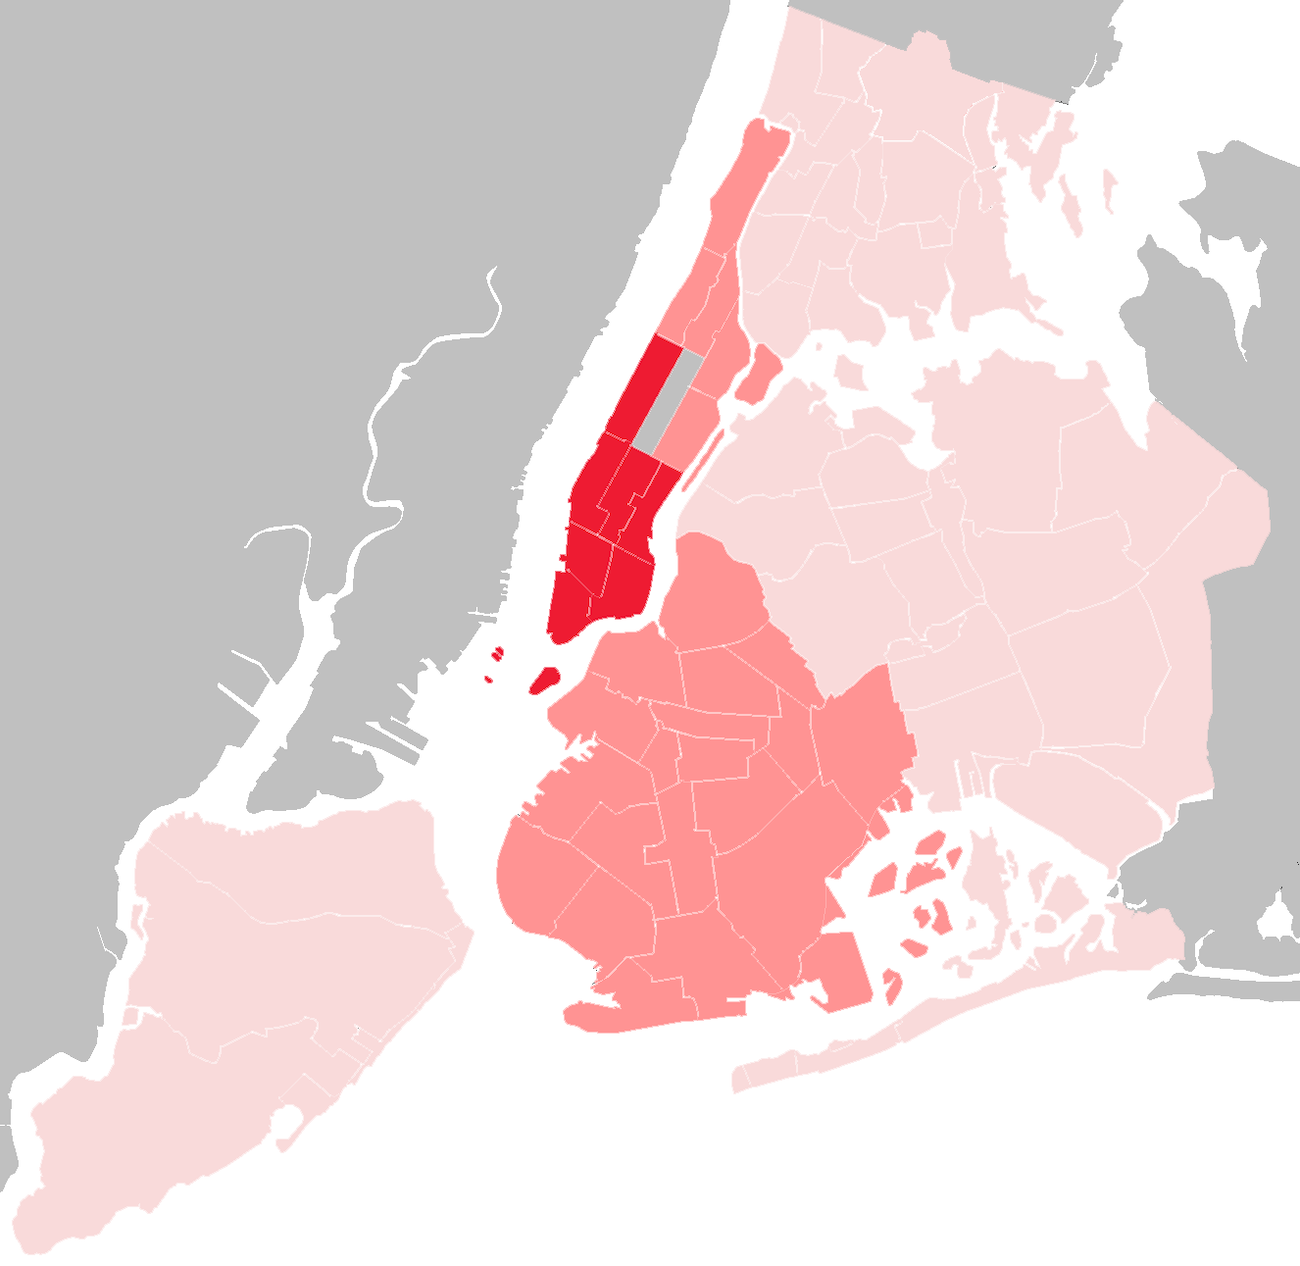 NYC Parking Garage Inspection Map v2